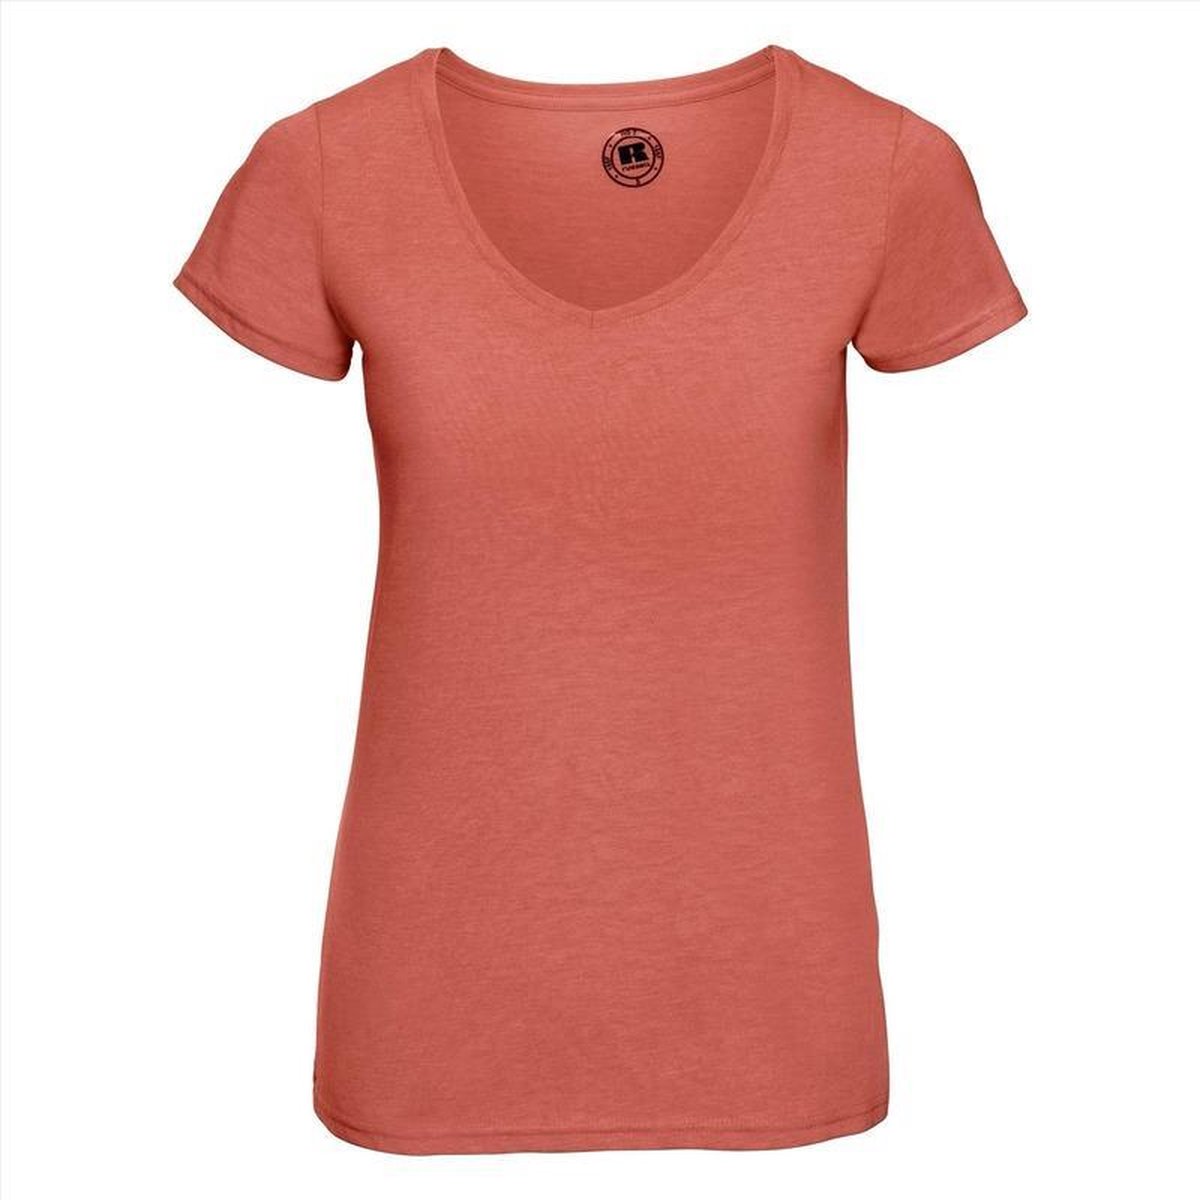 Basic V-hals t-shirt vintage washed koraal oranje voor dames - Dameskleding t-shirt oranje M (38/50)